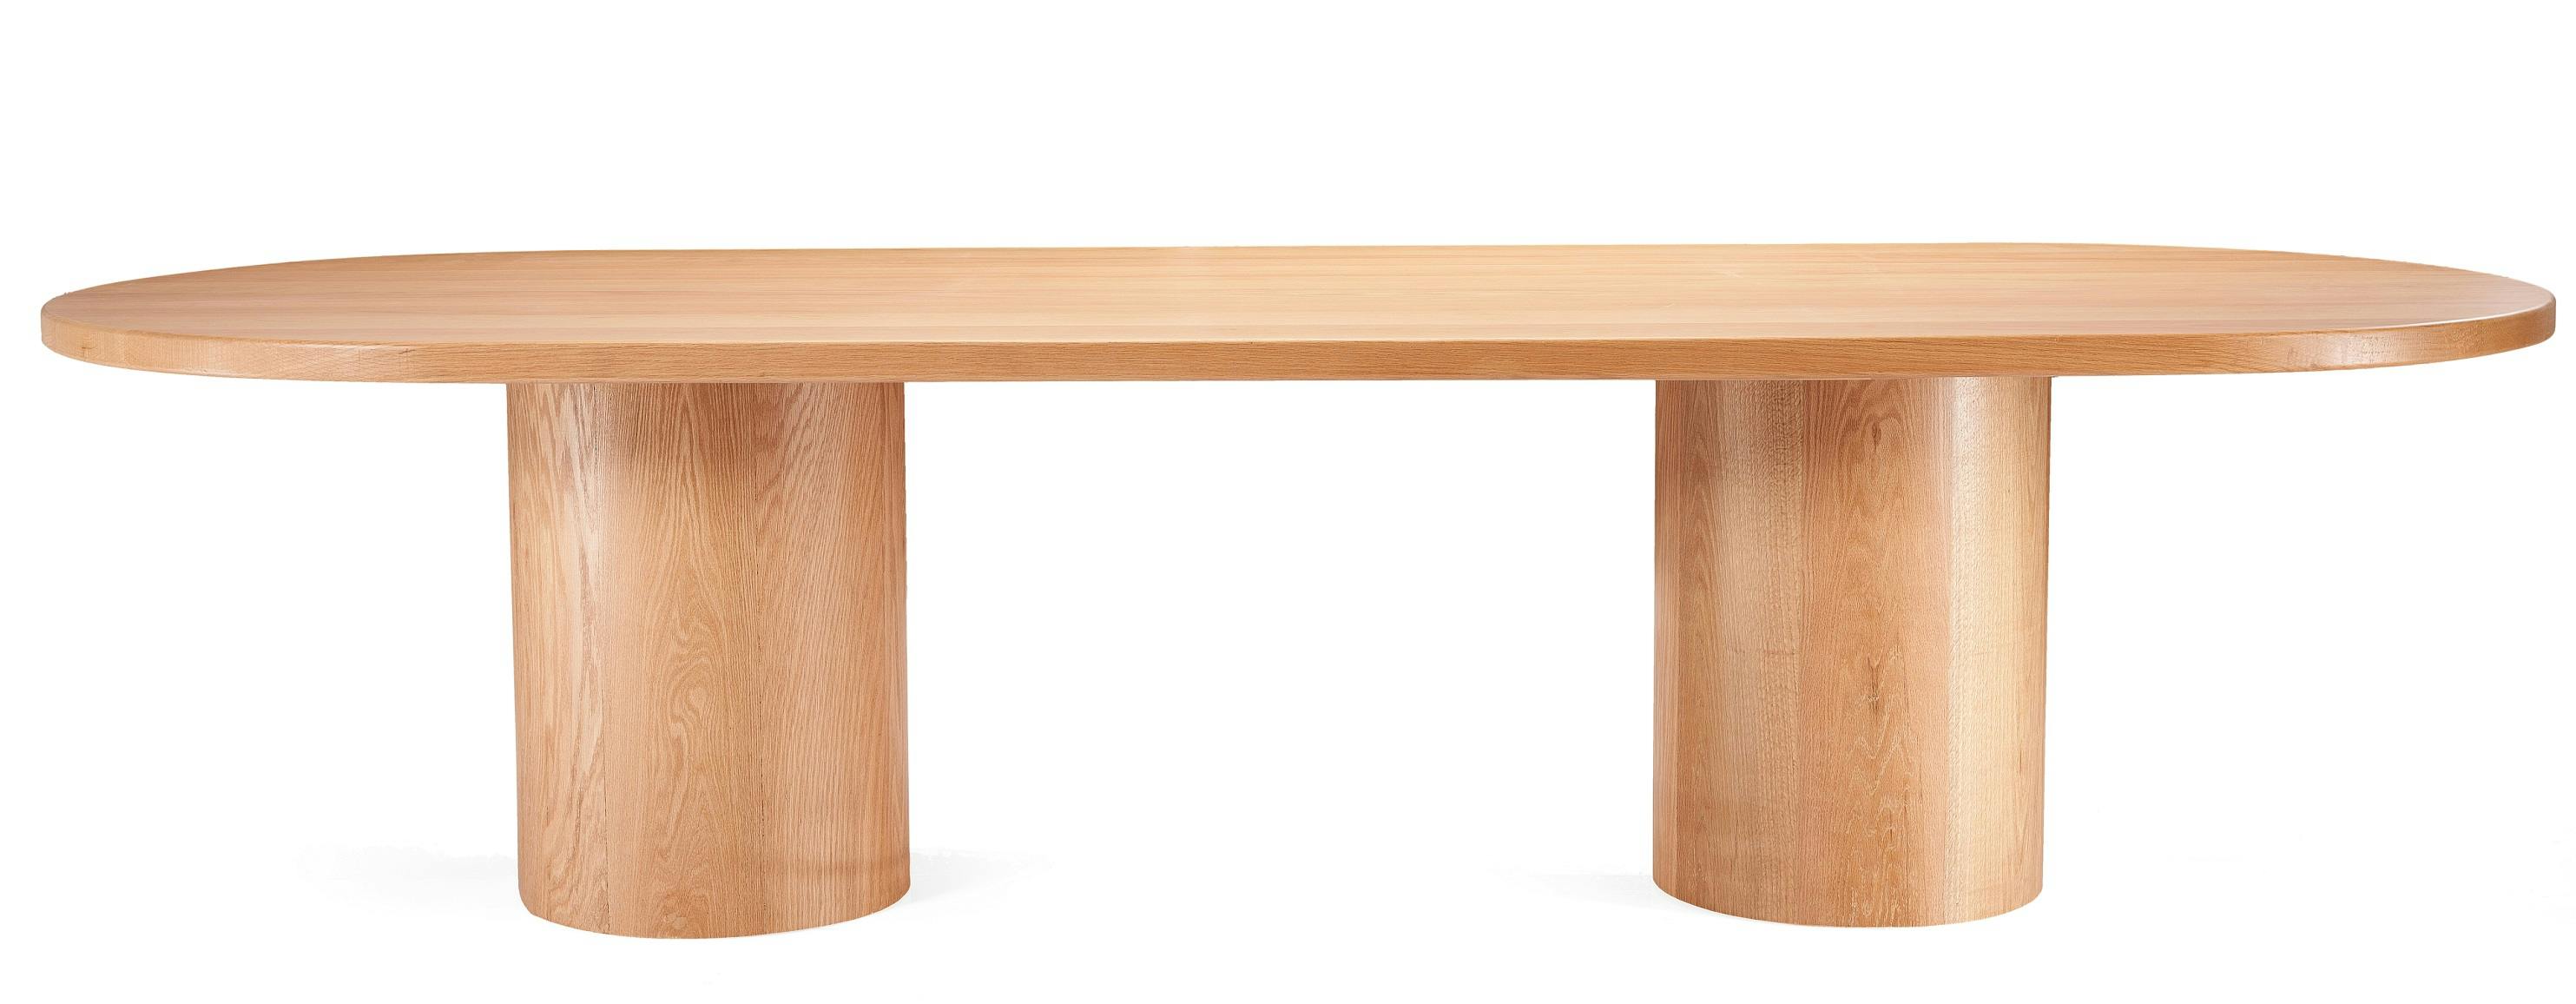 طاولة سفرة بيضاوية- خشب أرو 0